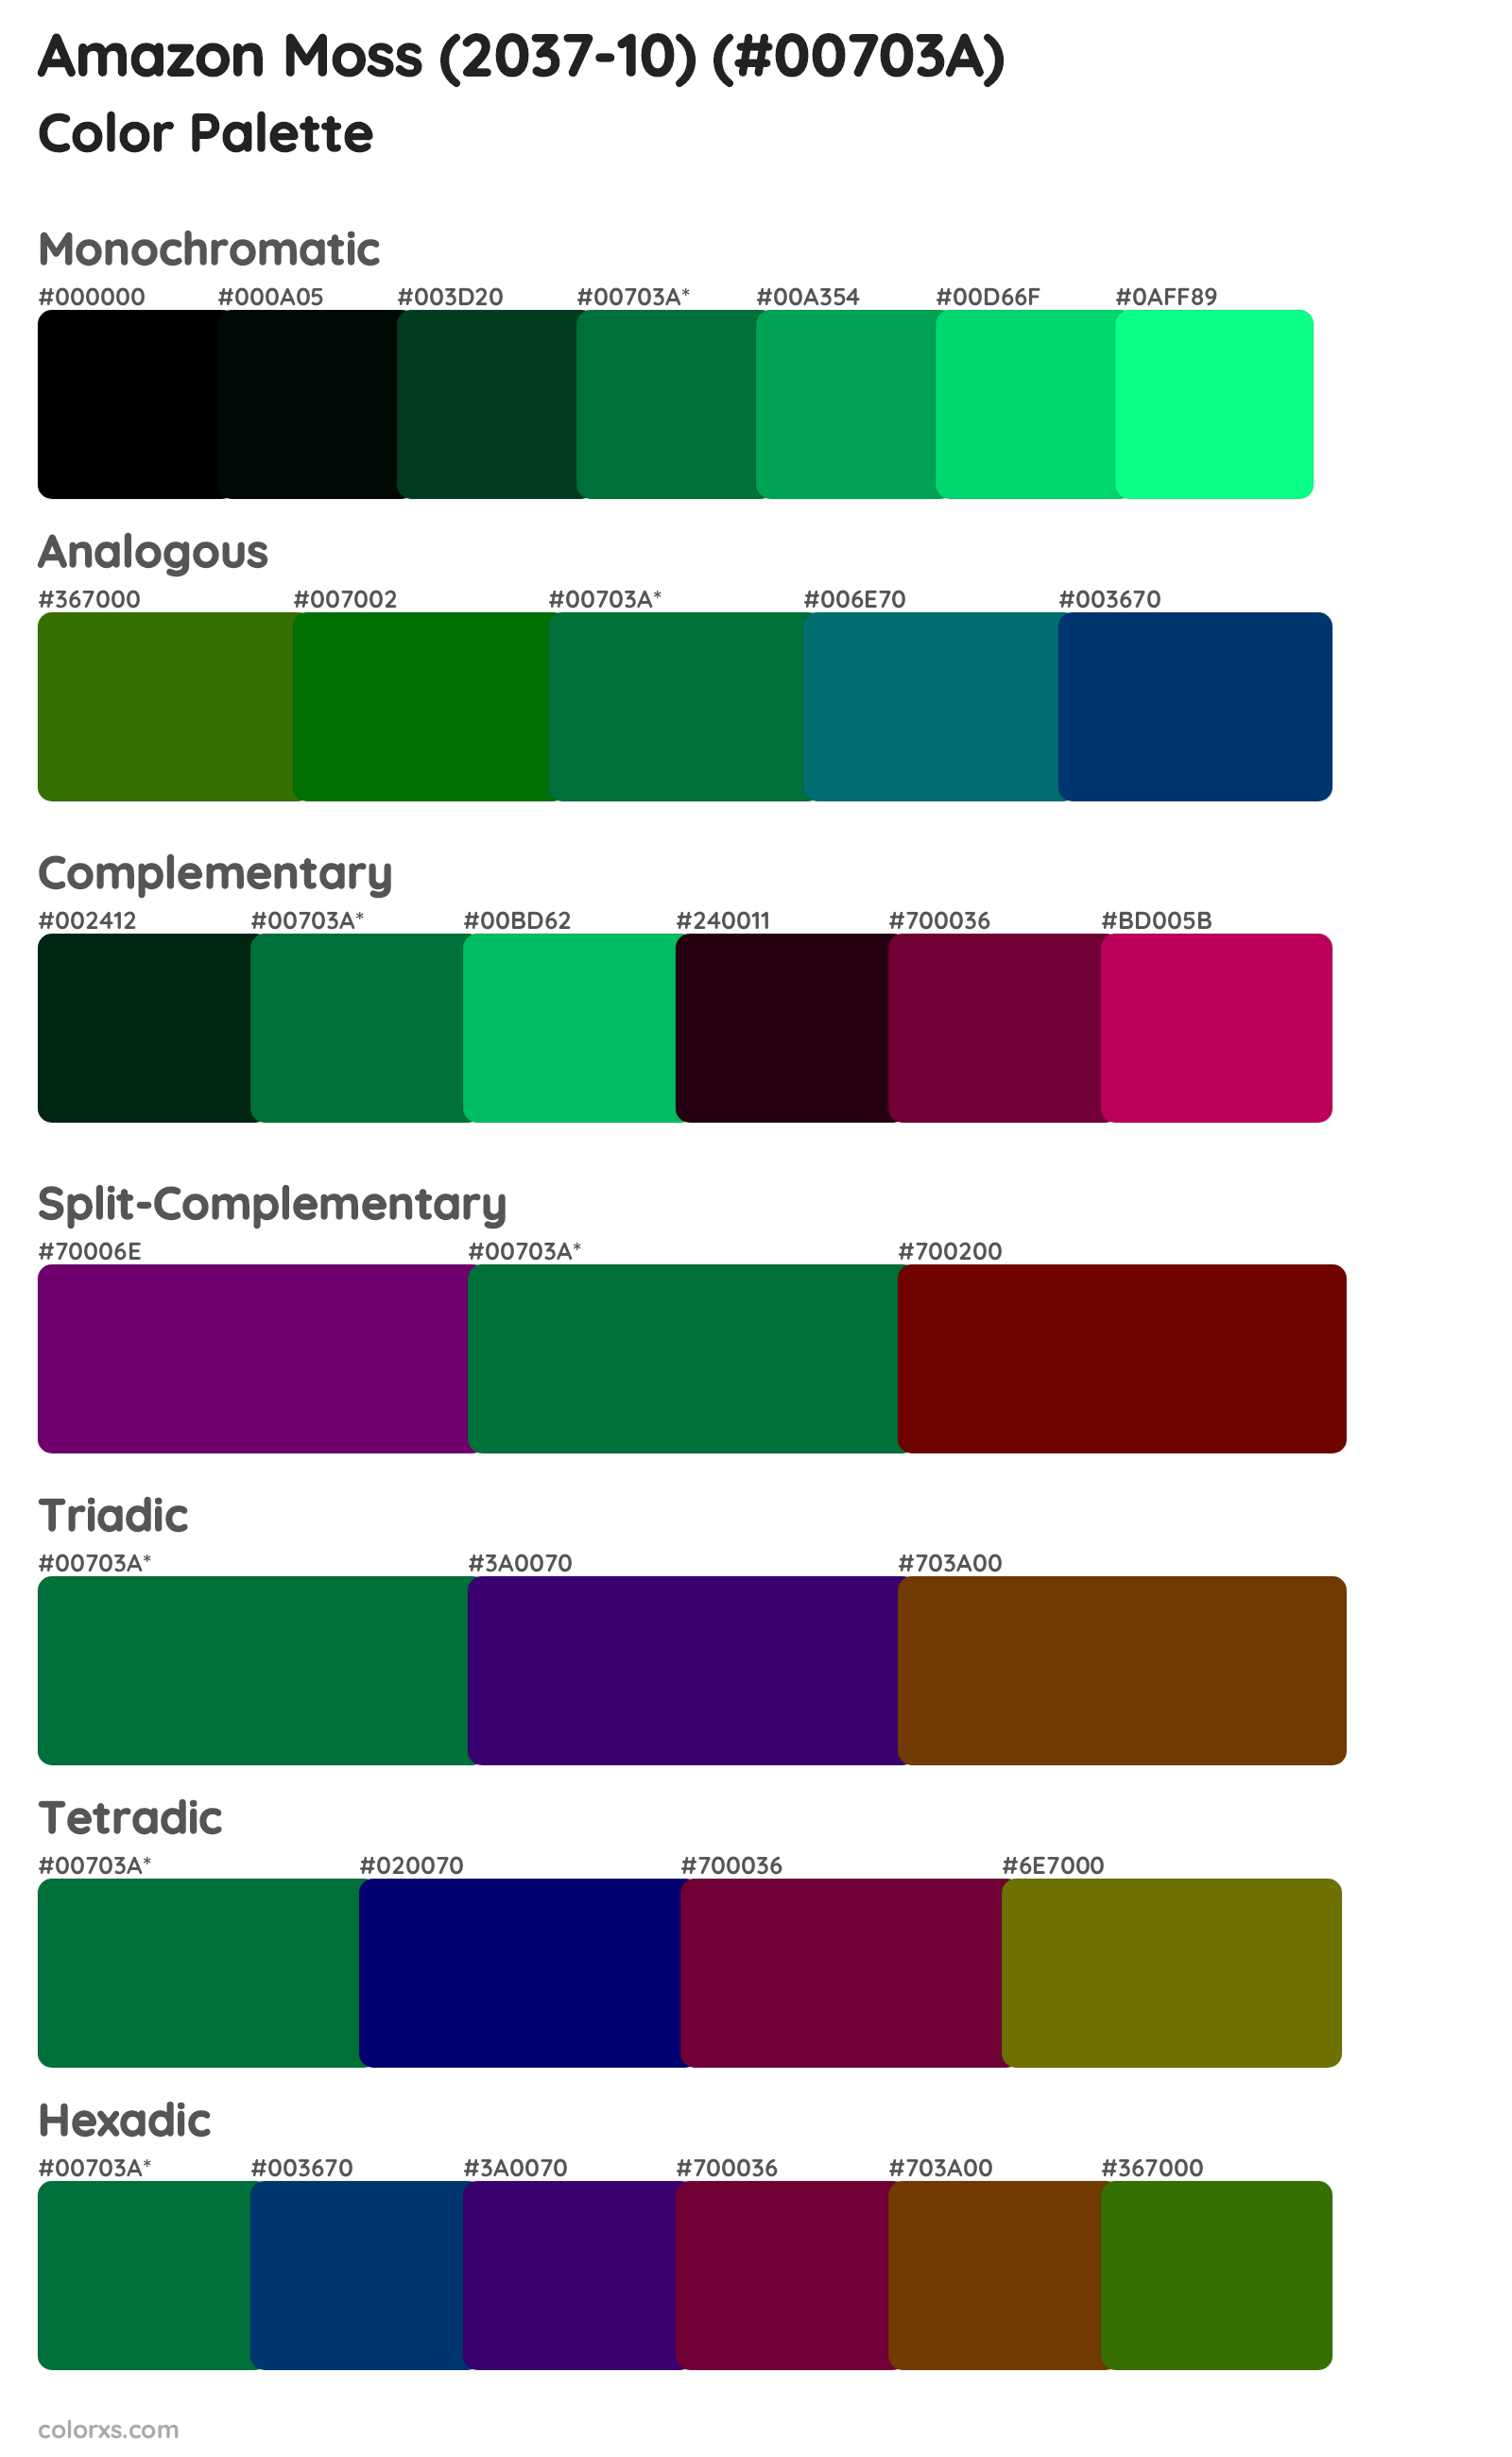 Amazon Moss (2037-10) Color Scheme Palettes